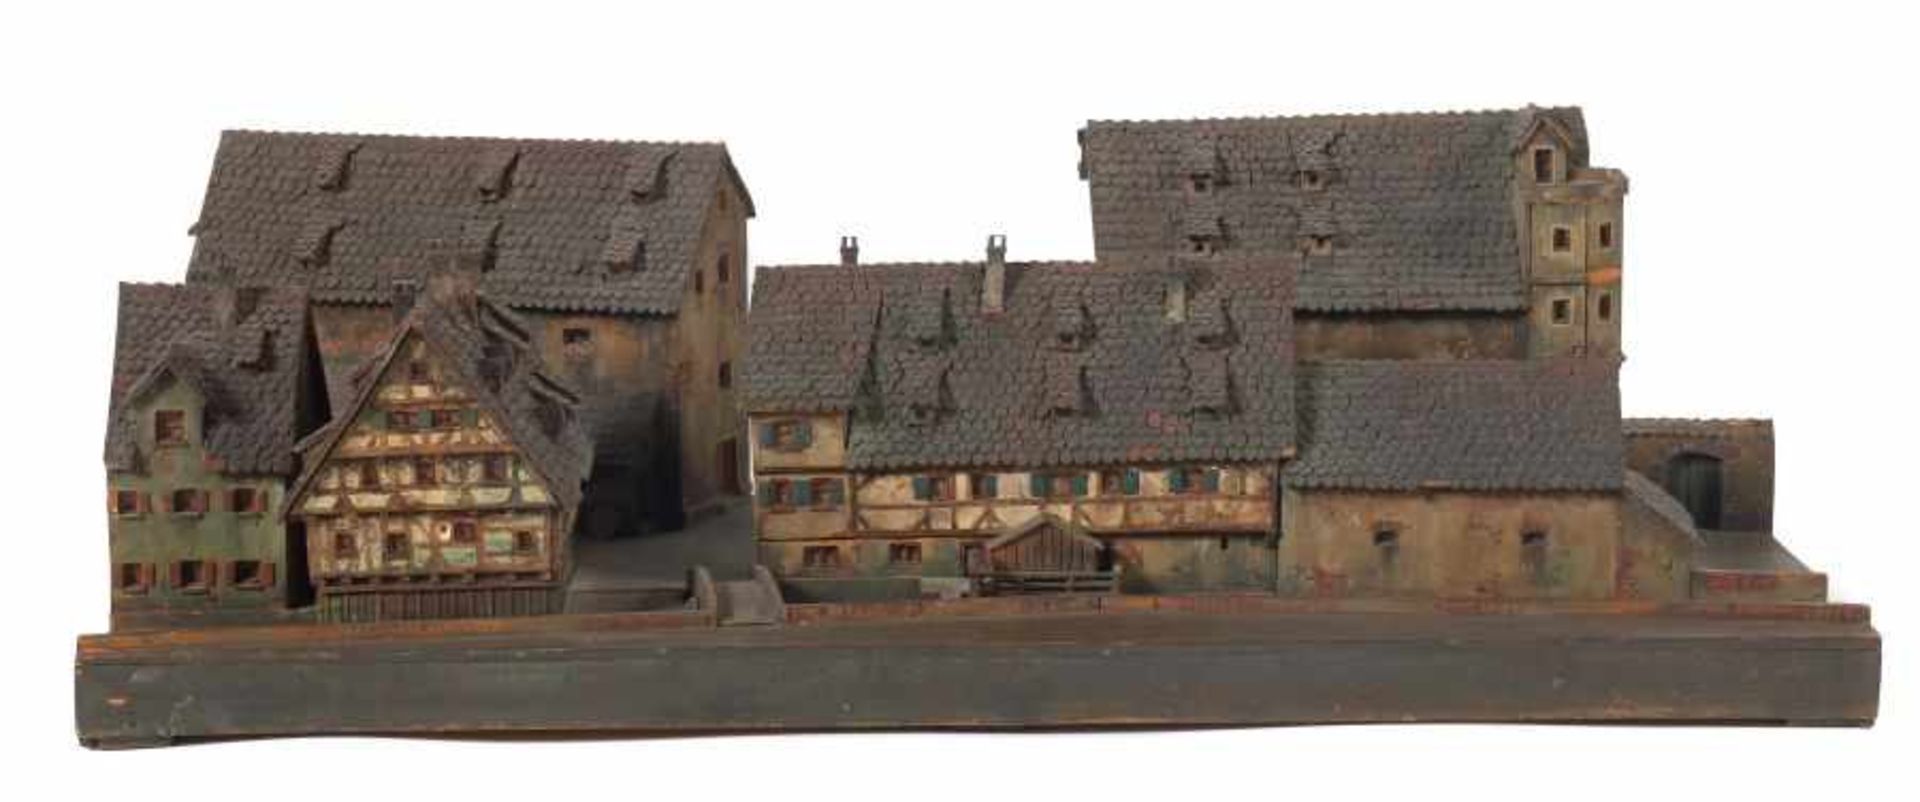 Architekturmodell3. Drittel 19. Jh., Holz/Karton, detailreiche Darstellung des Schiefen Hauses in